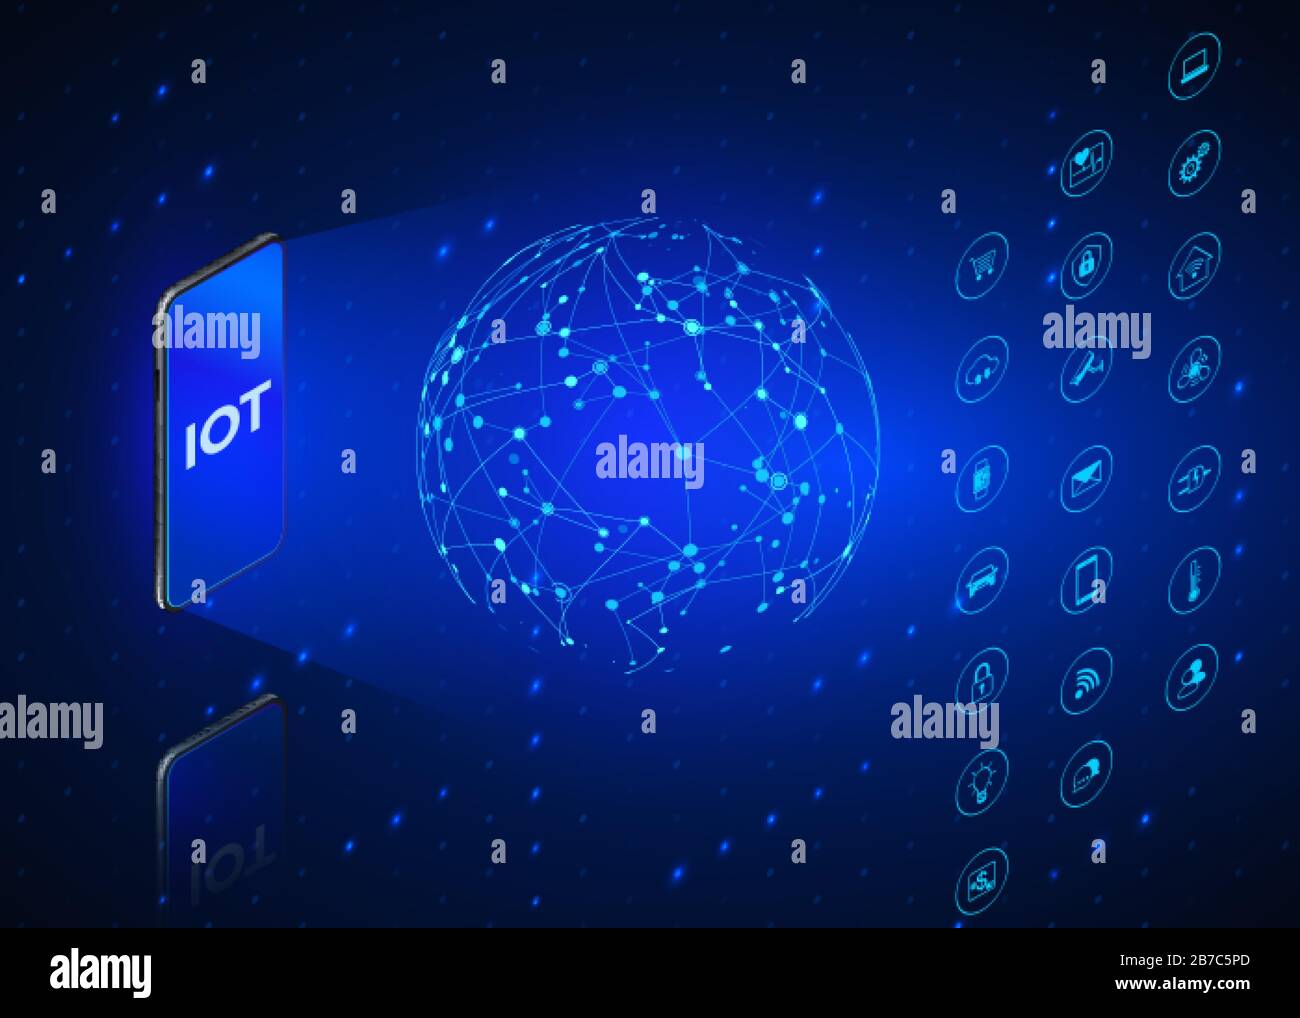 IOT. Isometrische Symbole für das Internet der Dinge festgelegt. Überwachung und Steuerung aller digitalen Systeme über das Mobiltelefon. Technischer Hintergrund in blauen Farben. Vect Stock Vektor